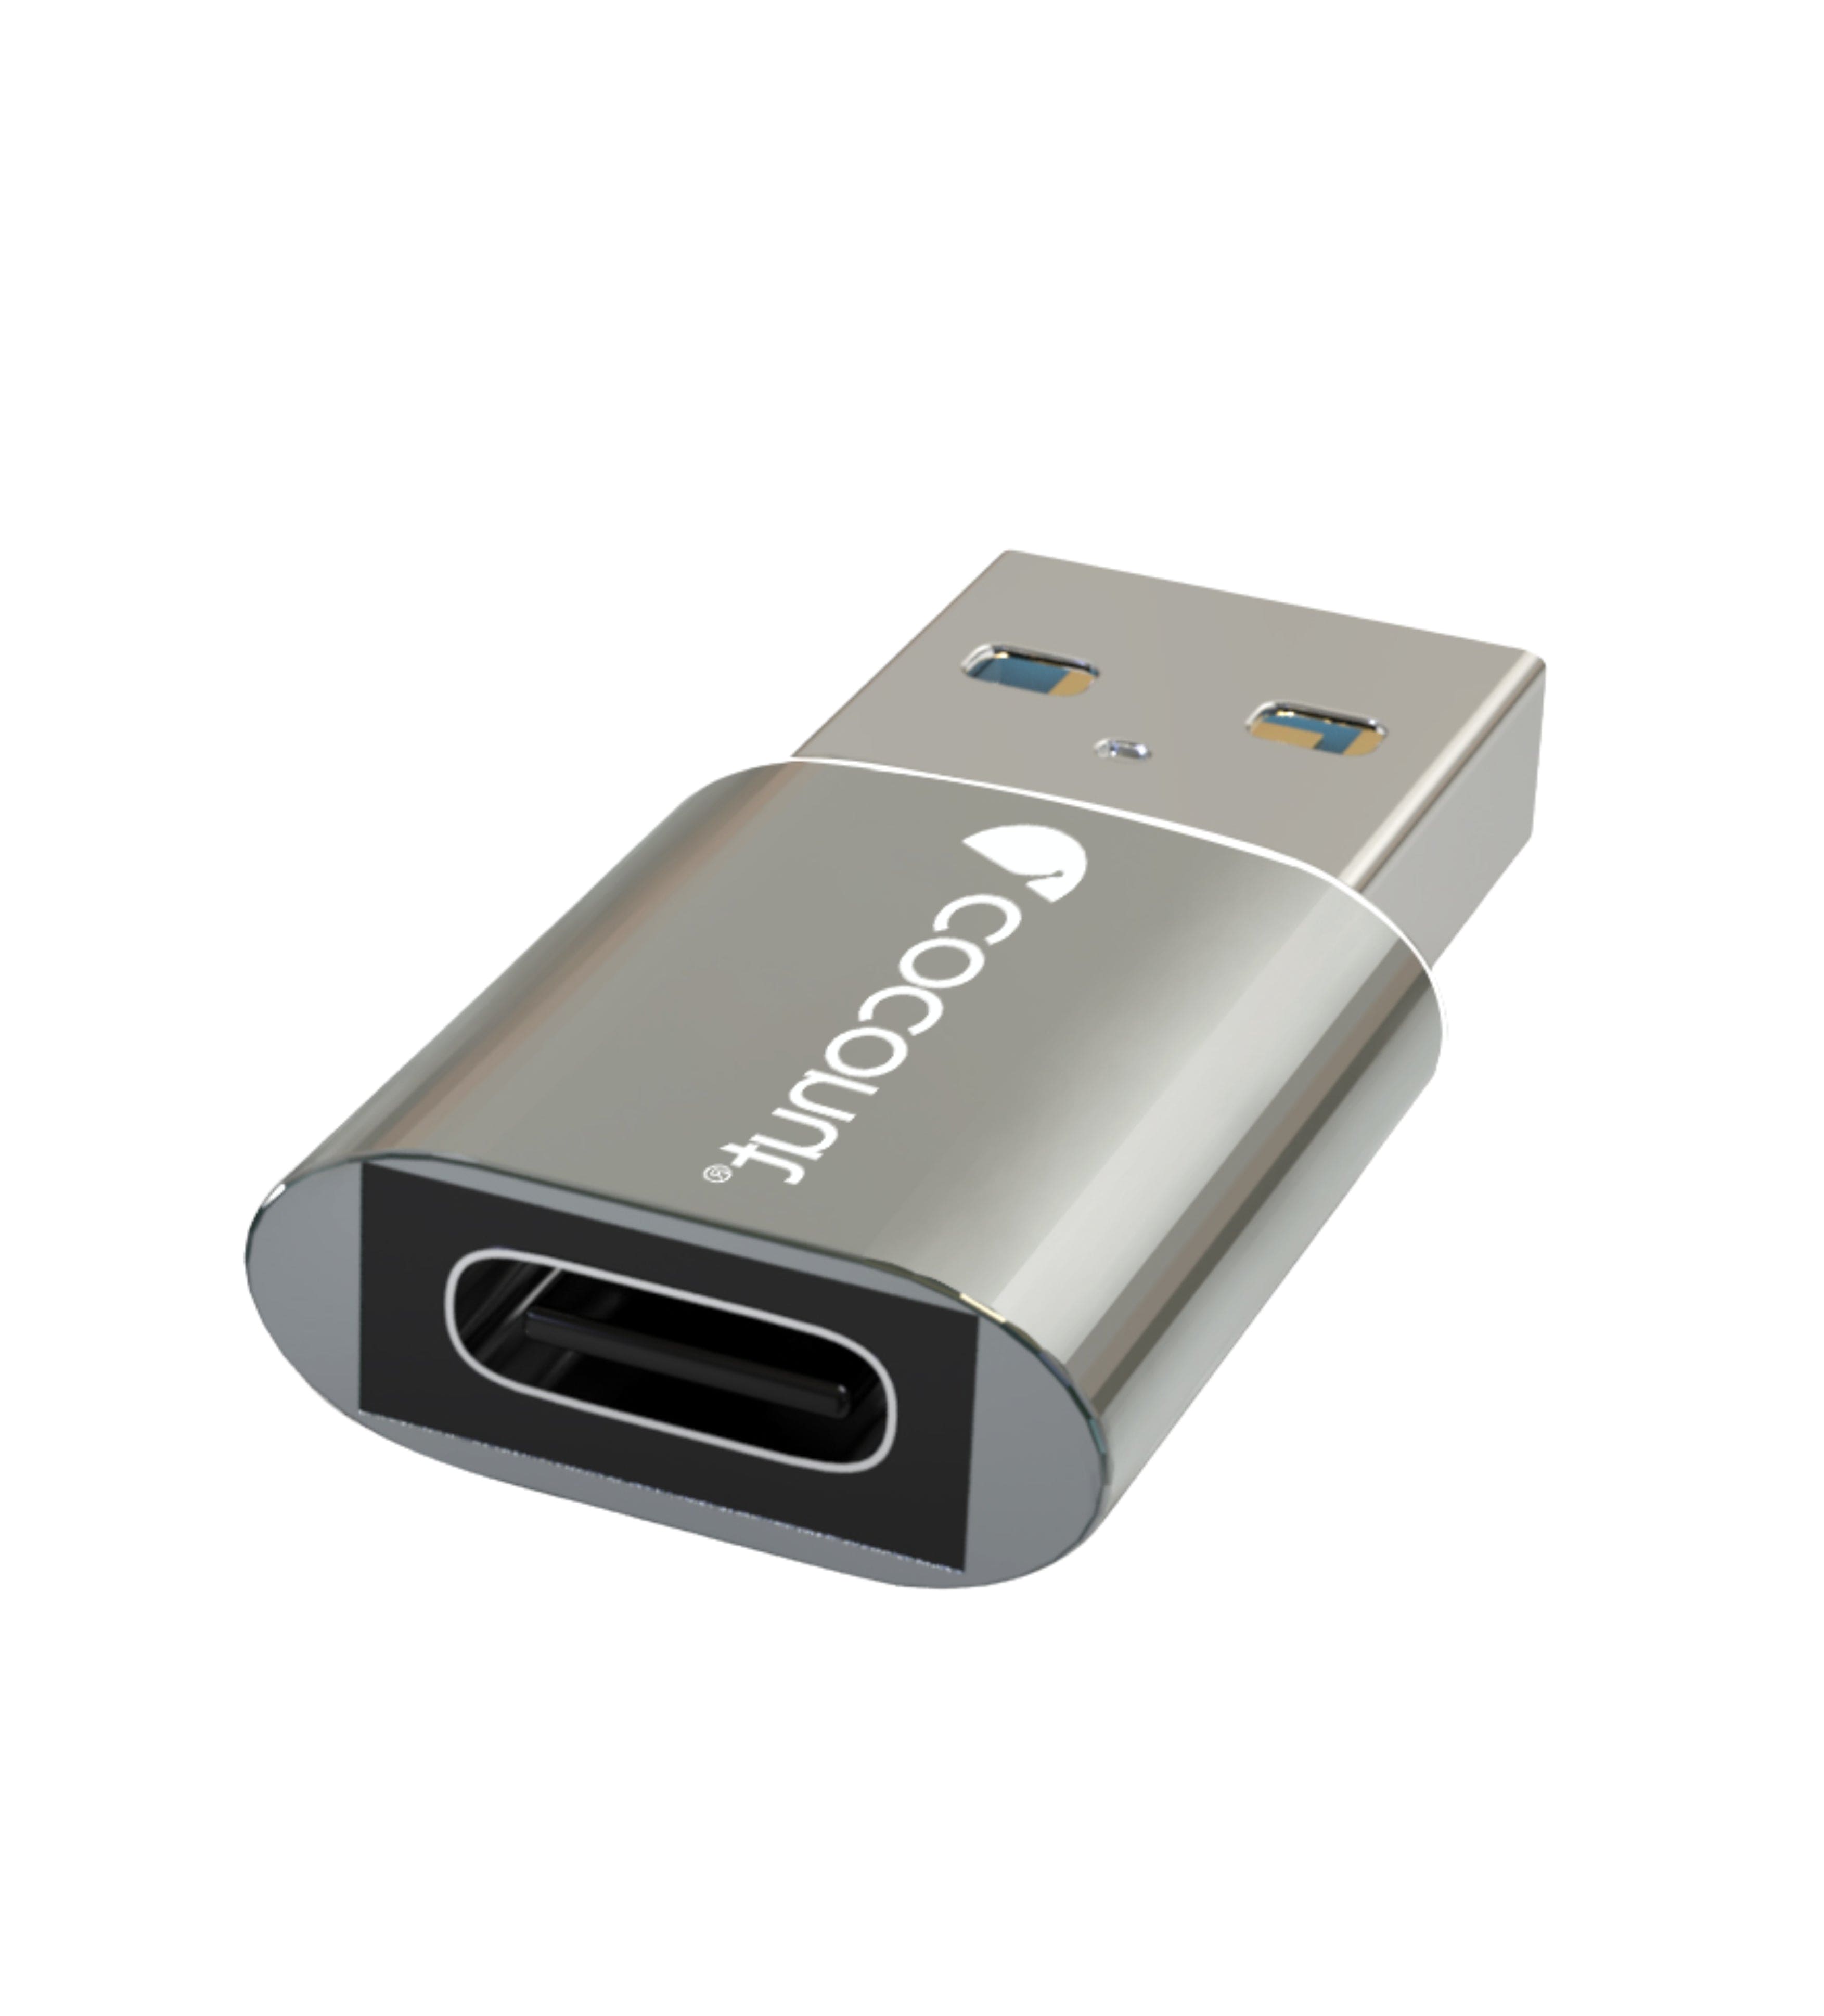 OT07 Type C to USB 3.0 OTG Adapter, Aluminium Body